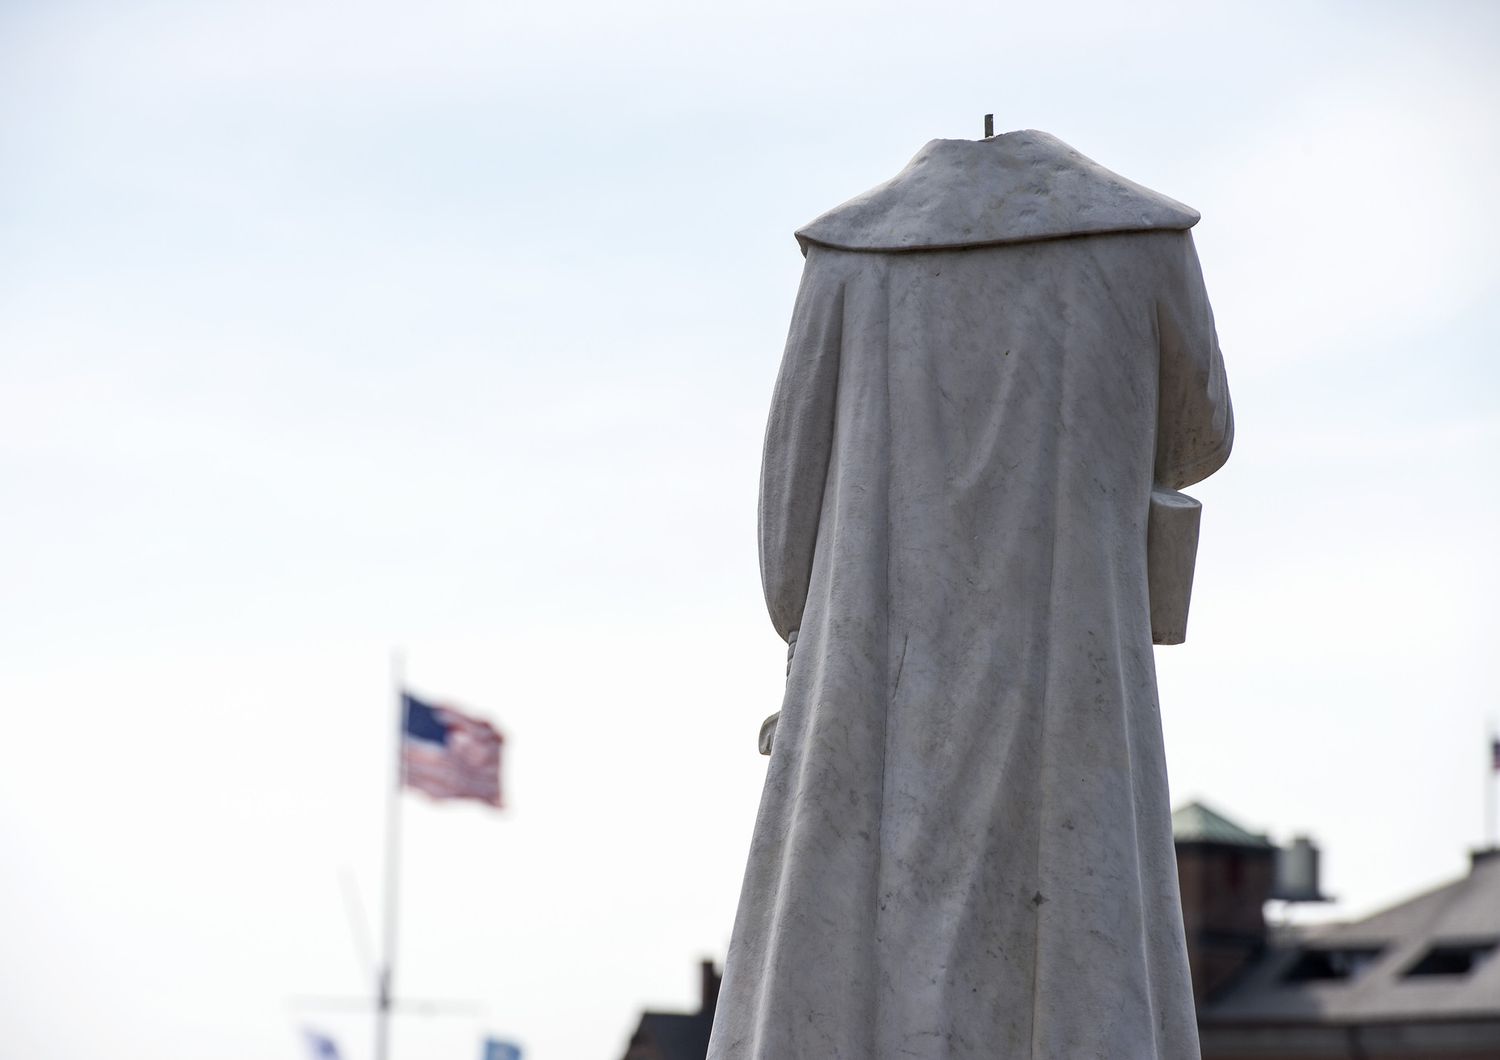 La statua di Cristoforo Colombo a Boston, decapitata dai manifestanti.